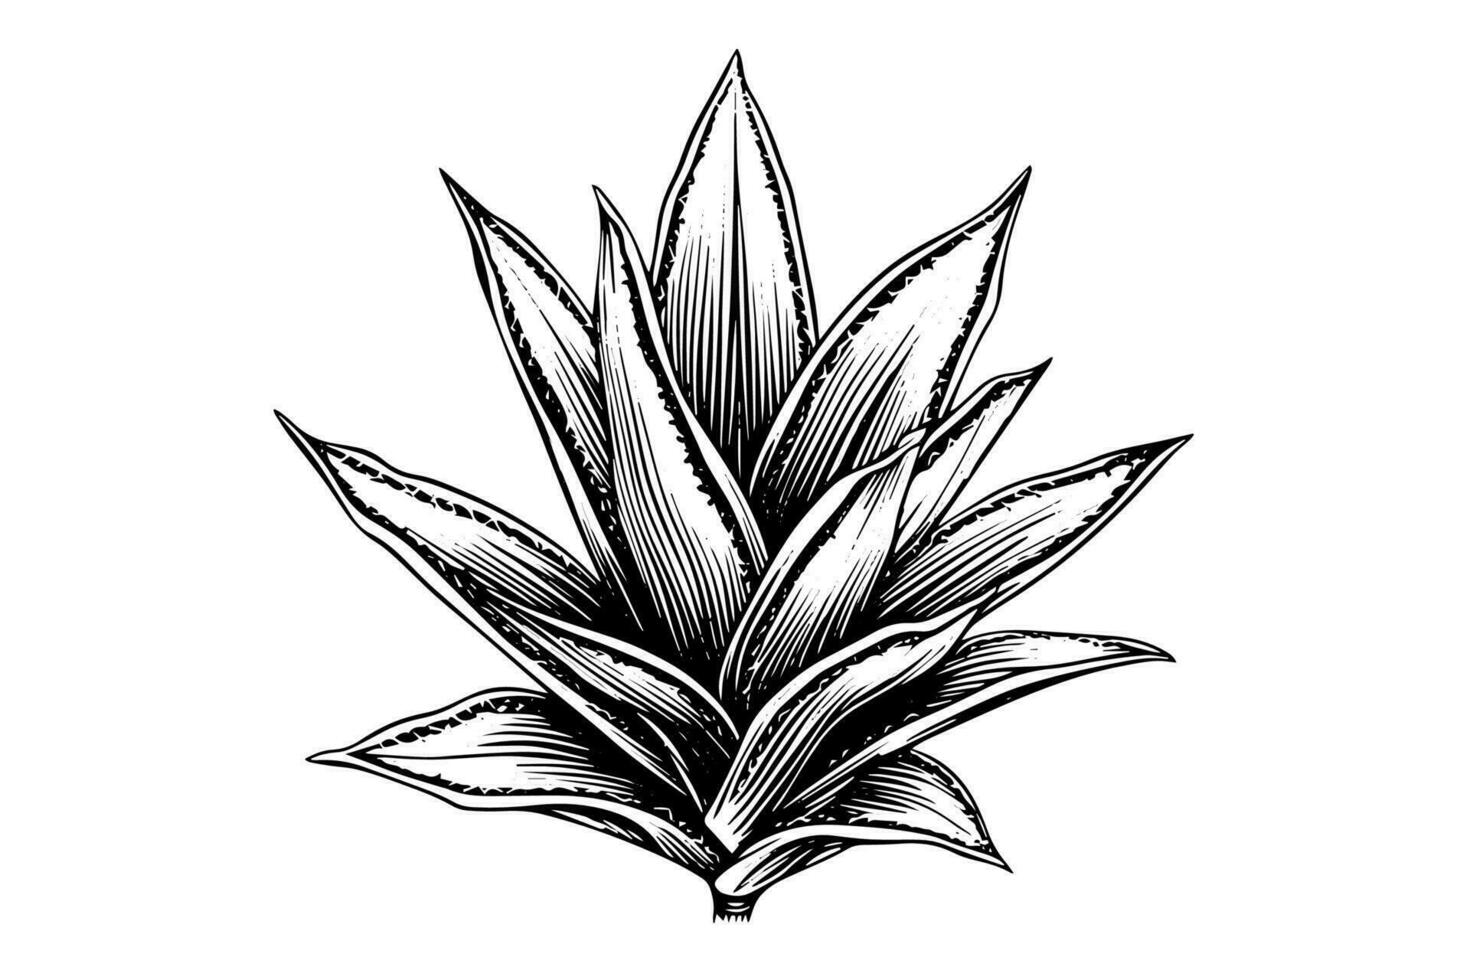 Blau Agave Tinte skizzieren. Tequila Zutat Vektor Zeichnung. Gravur Illustration von Mexikaner Pflanze.